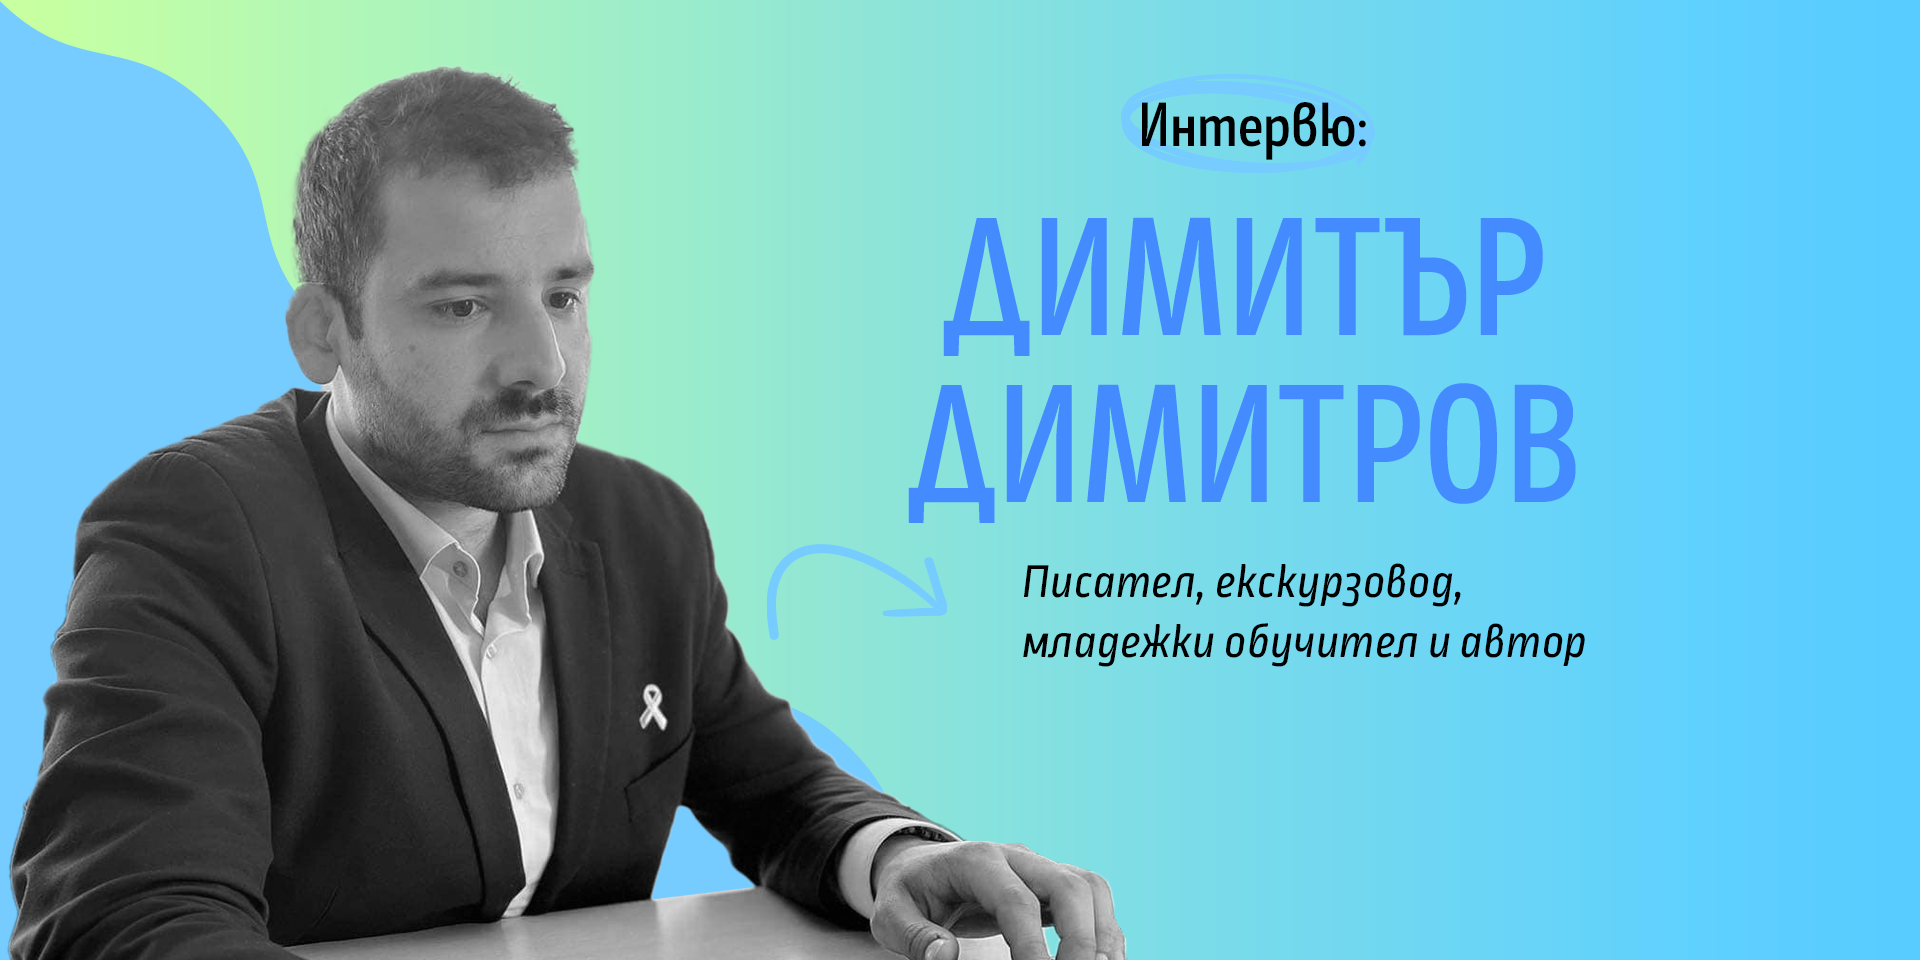 Димитър Димитров: Гласуването на местни избори е най-ефективният начин да покажем отношение към управлението